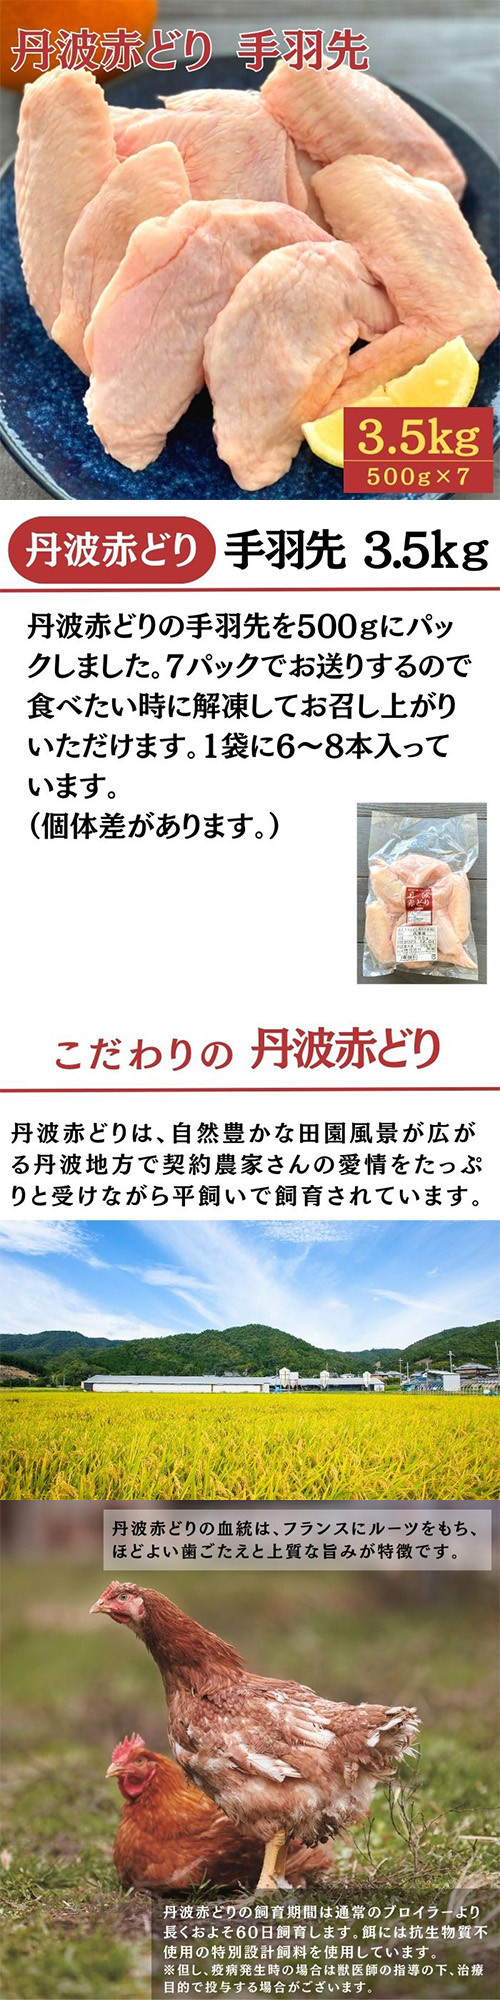 兵庫県産 丹波赤どりもも肉 2kg【ふるさとの味・近畿】